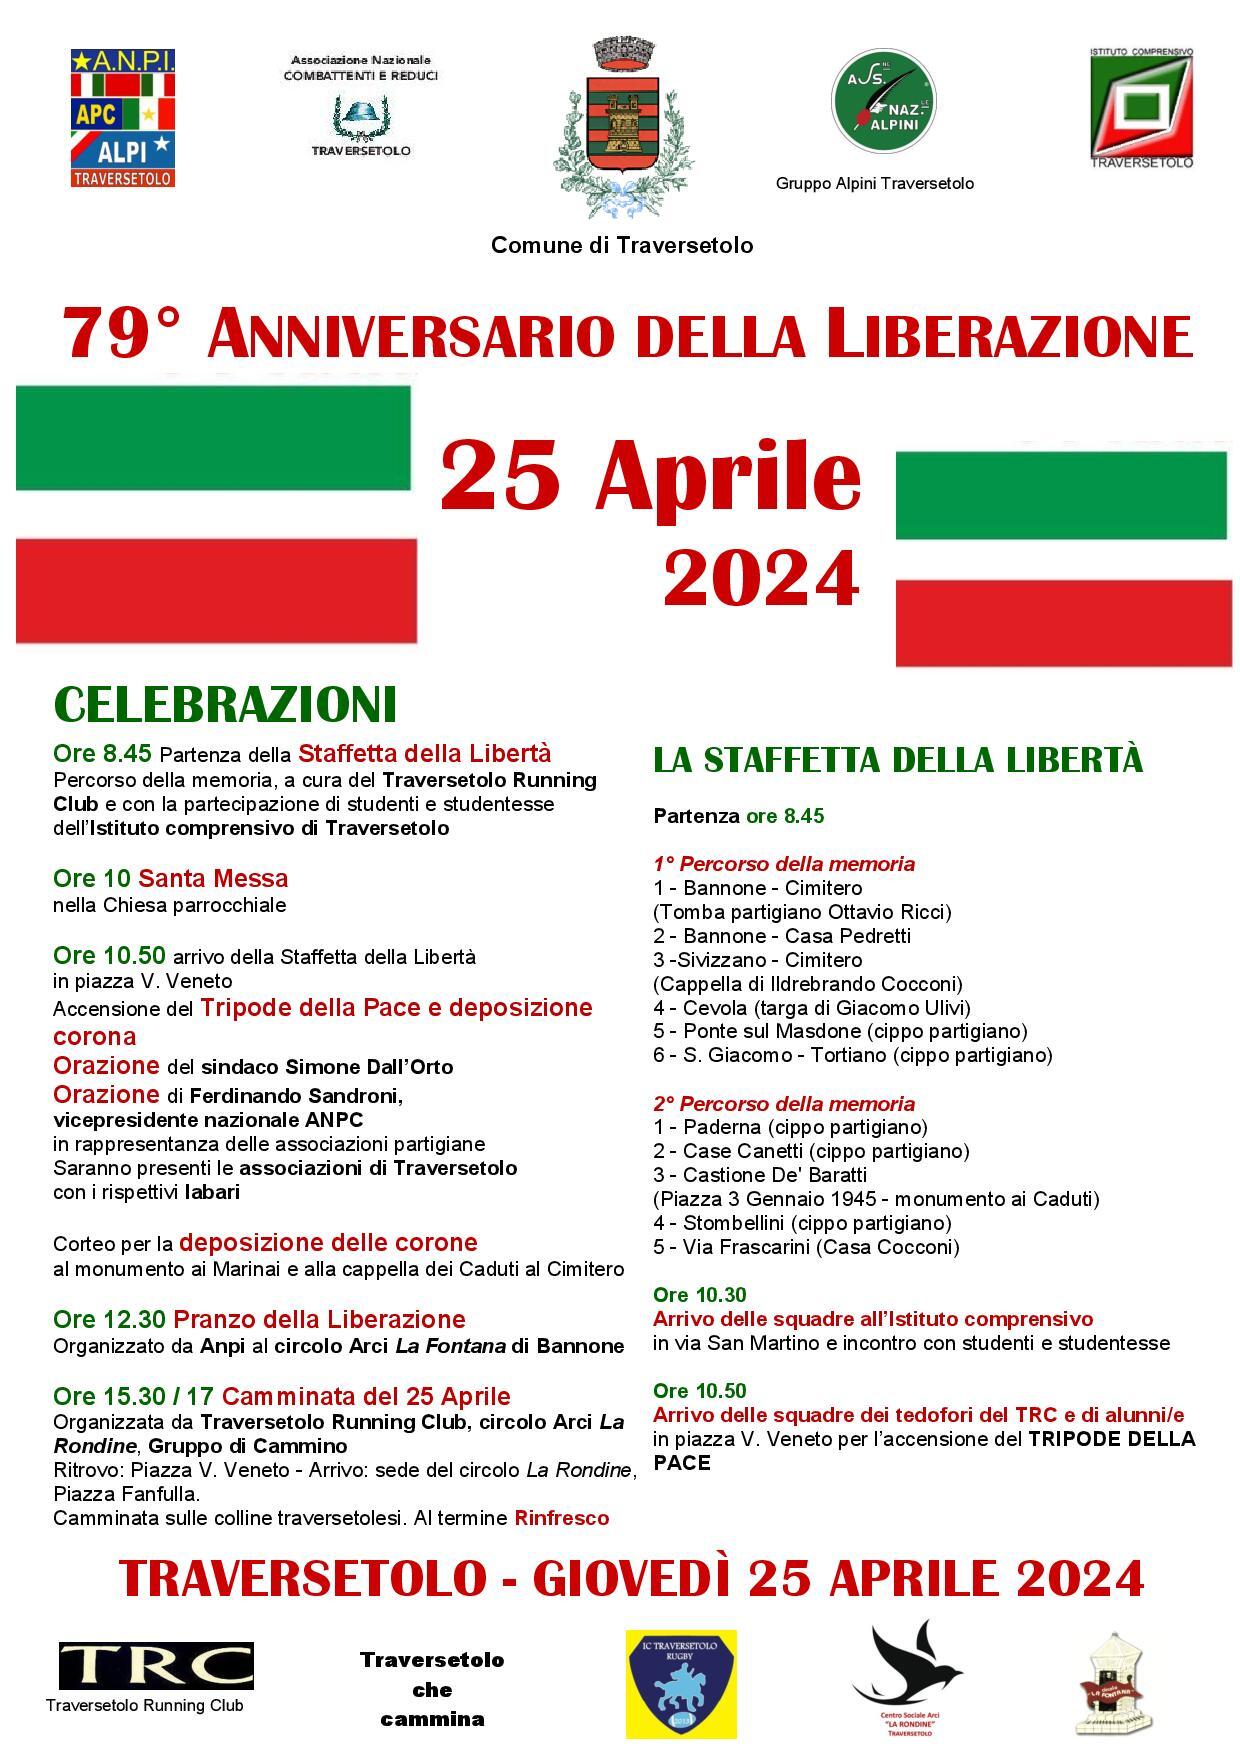 Traversetolo celebra il 25 Aprile: il programma delle iniziative